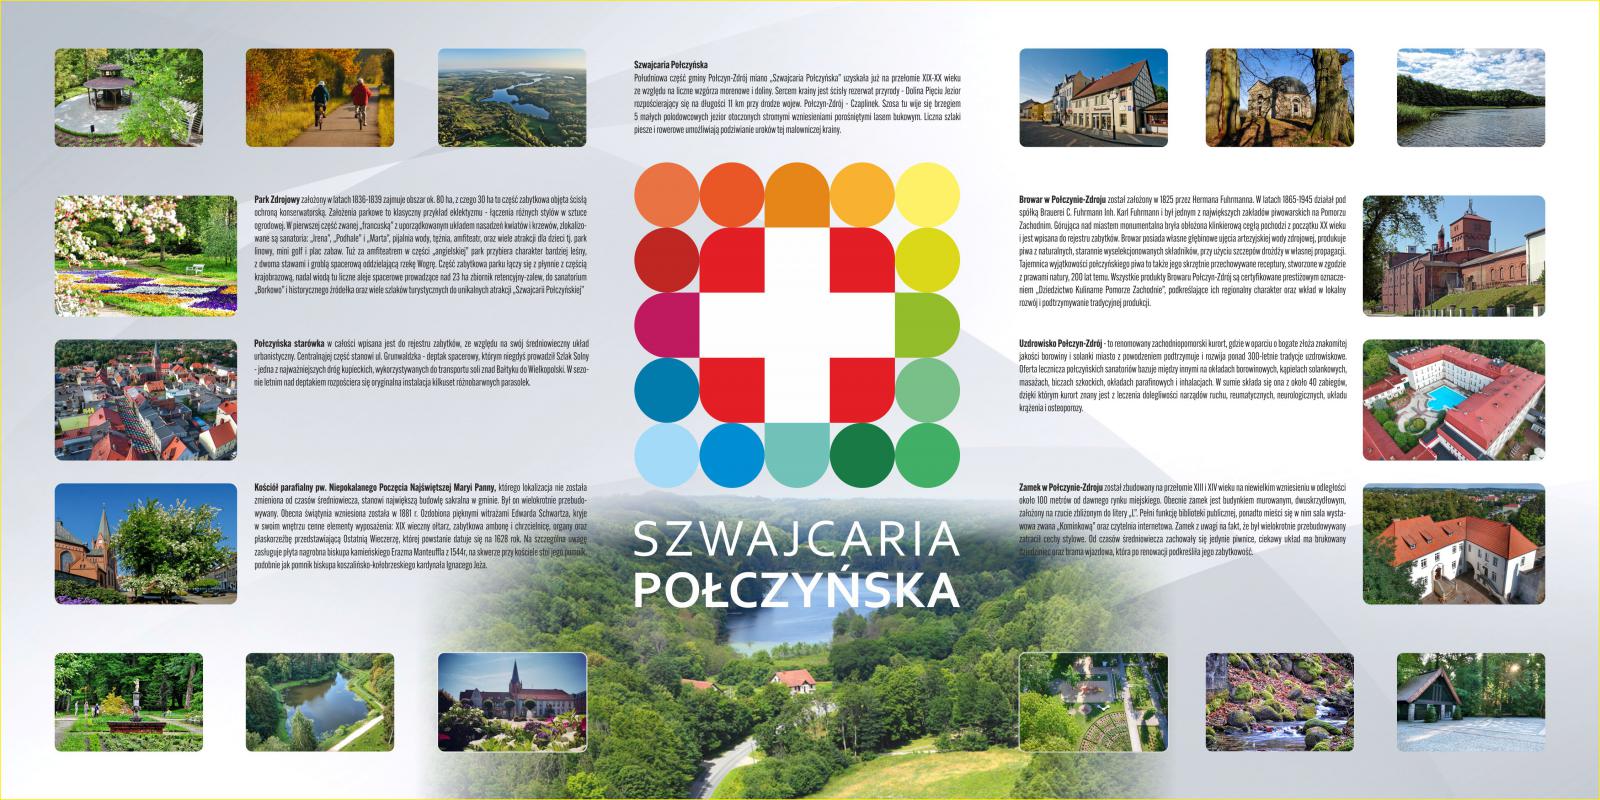 Marka Szwajcaria Połczyńska- tablica